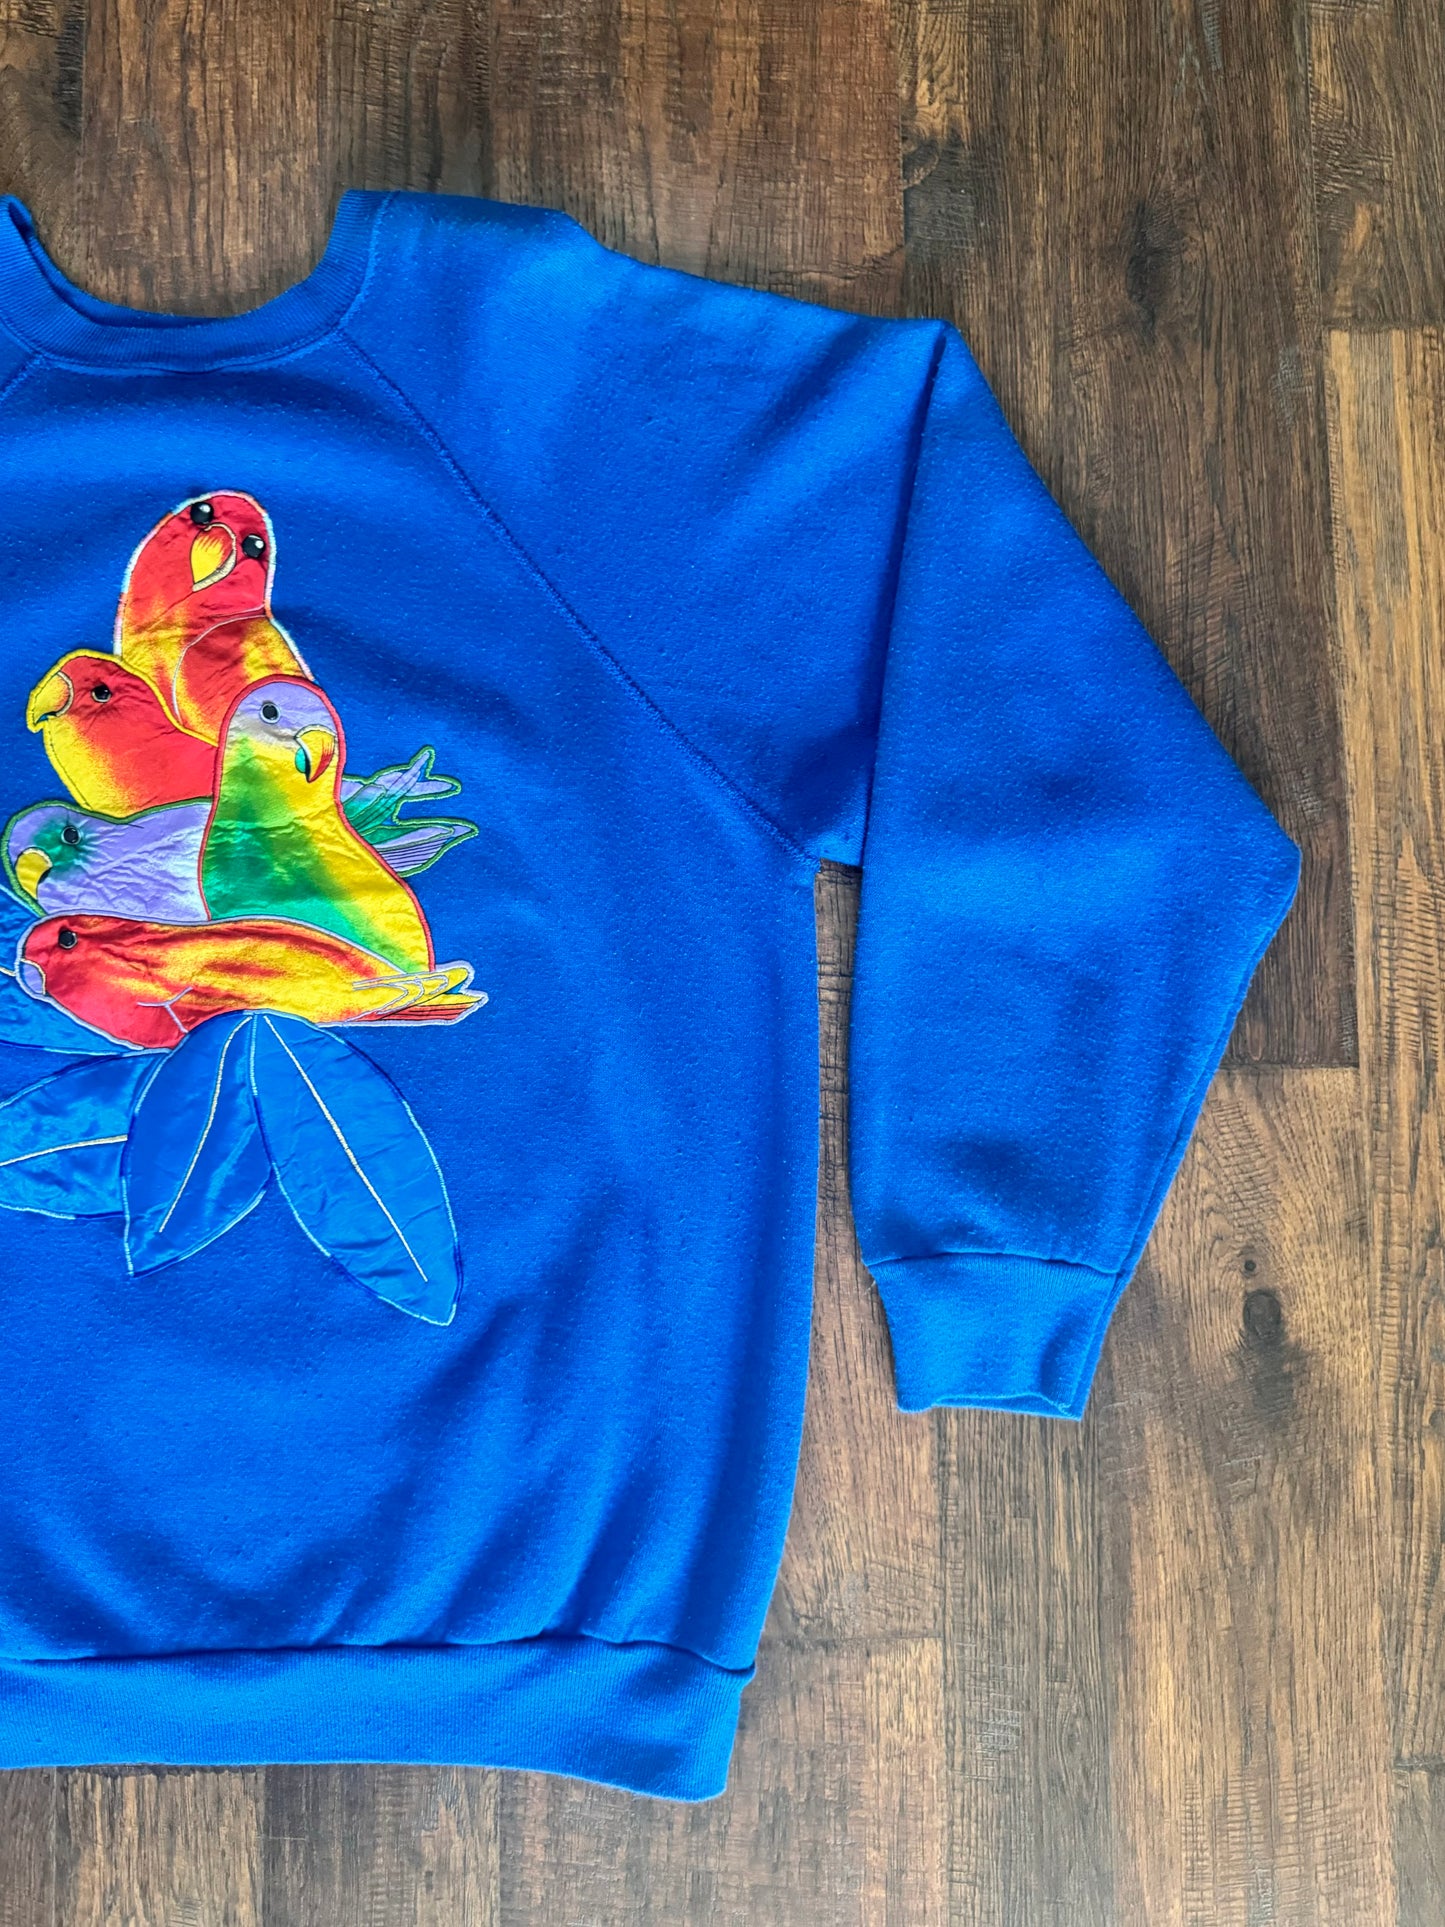 An Original By Aloha & Jackie Tultex Crewneck Sweatshirt - Parrots & Flowers Applique - X-Large